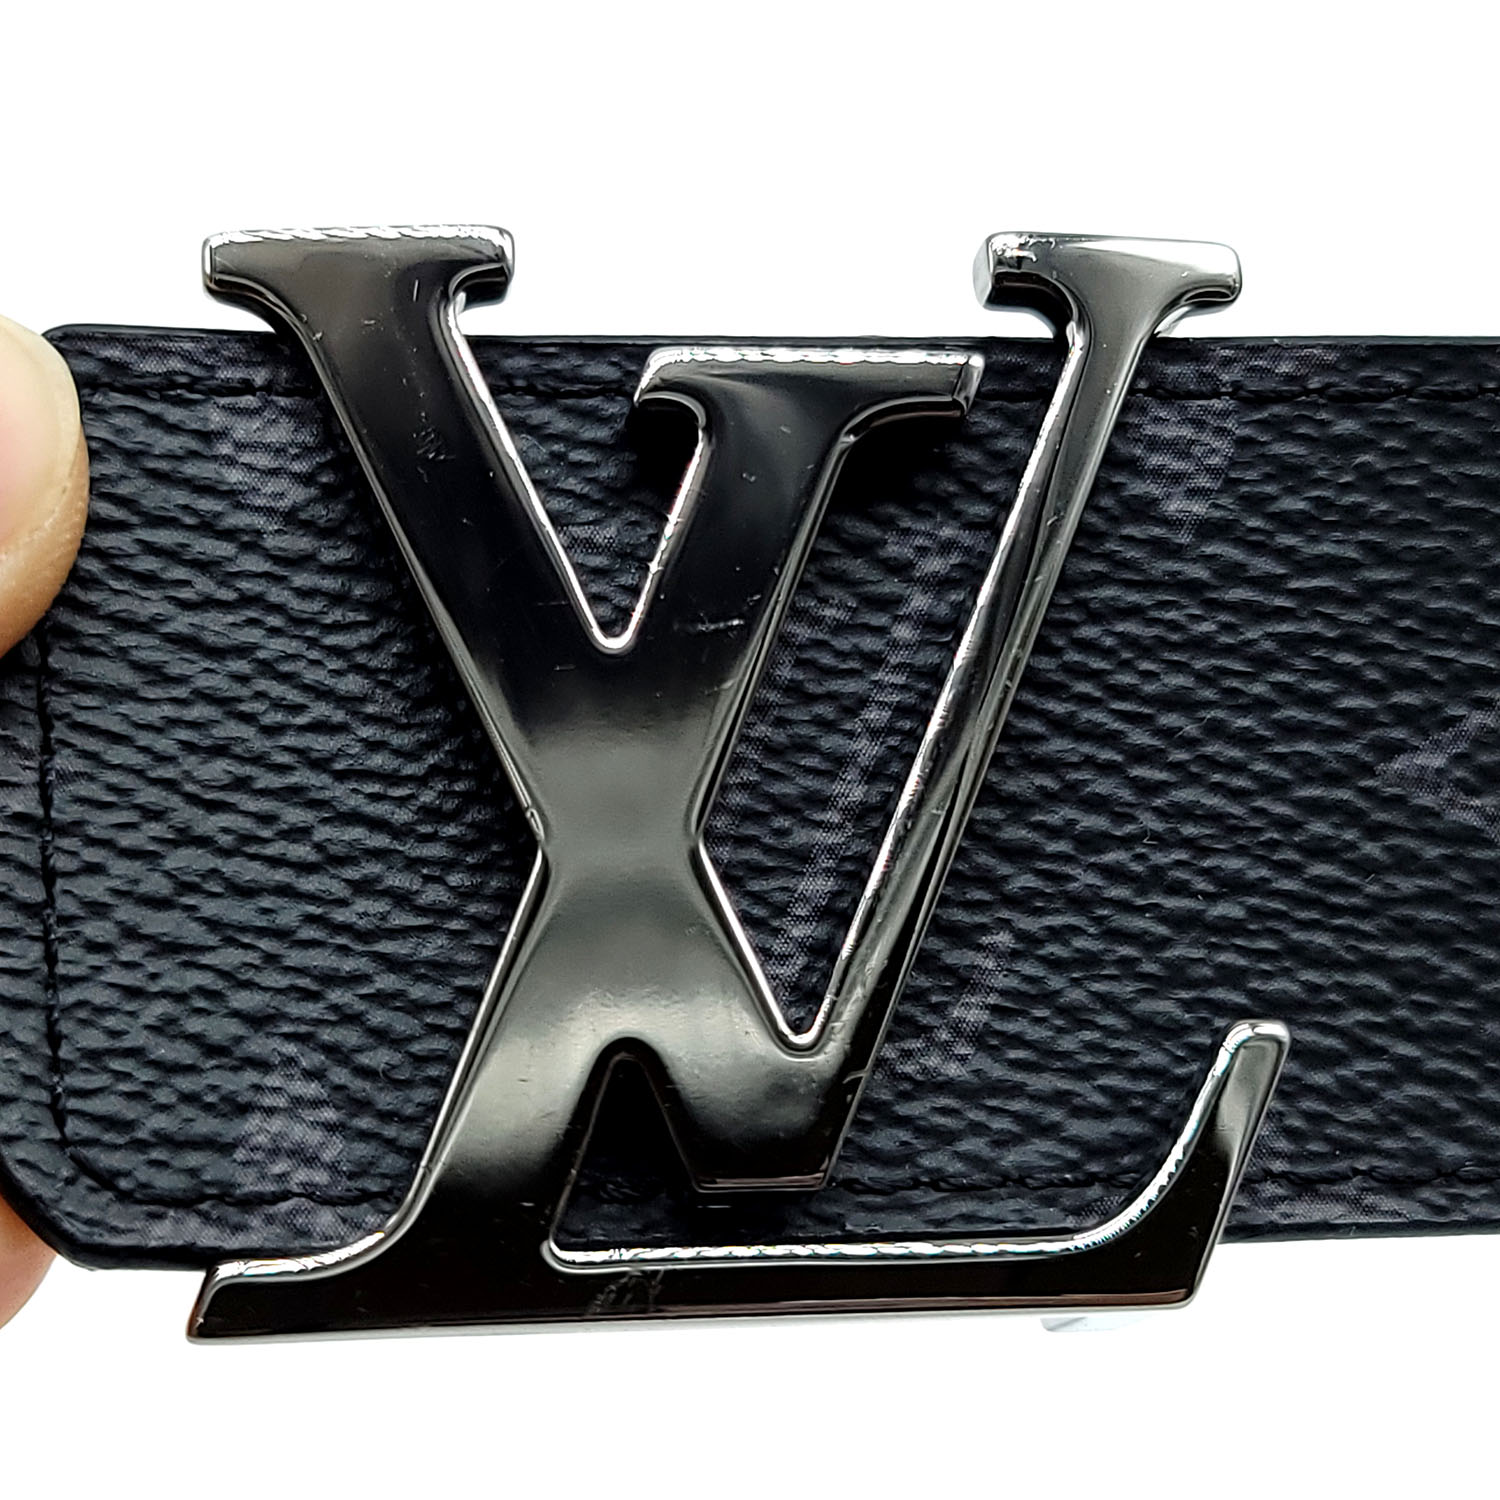 .com: Louis Vuitton Eclipse Canvas LV Initiales 40mm